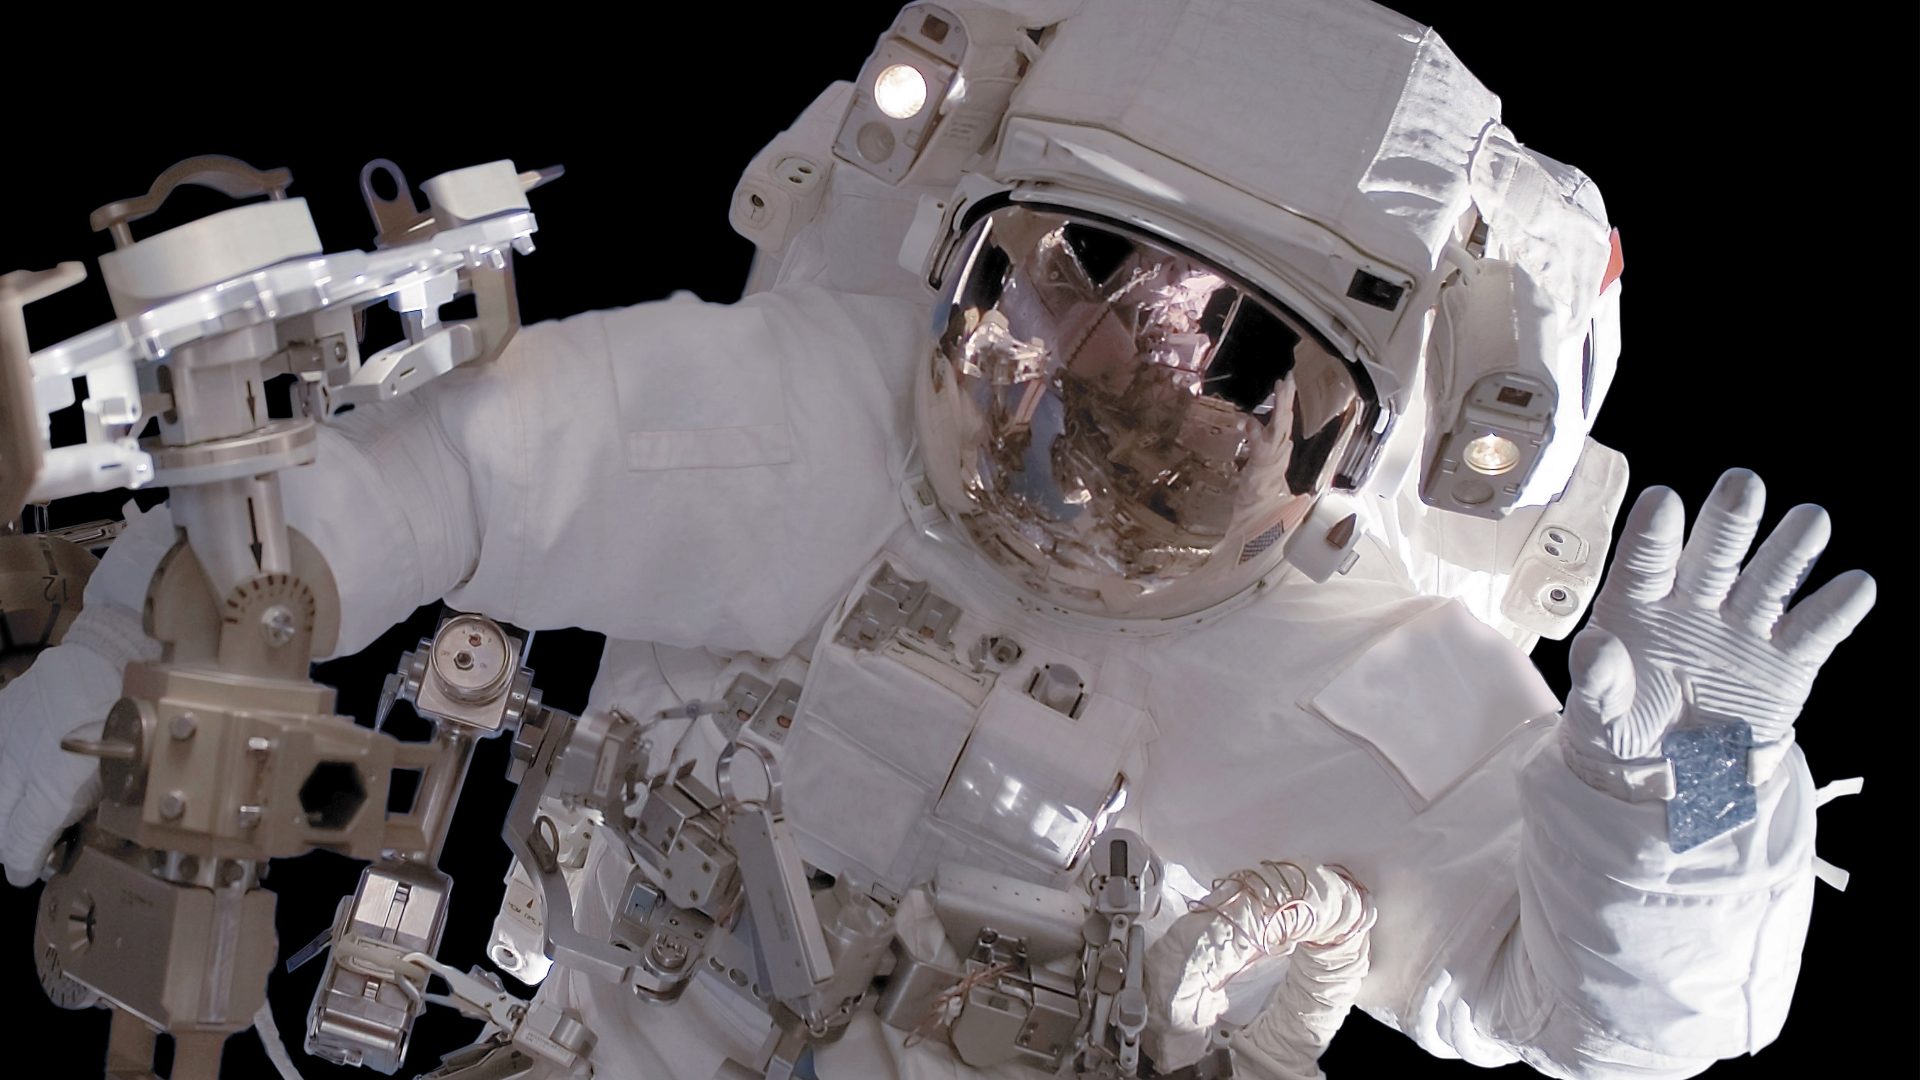 Astronaut (DLR CC-BY 3.0)